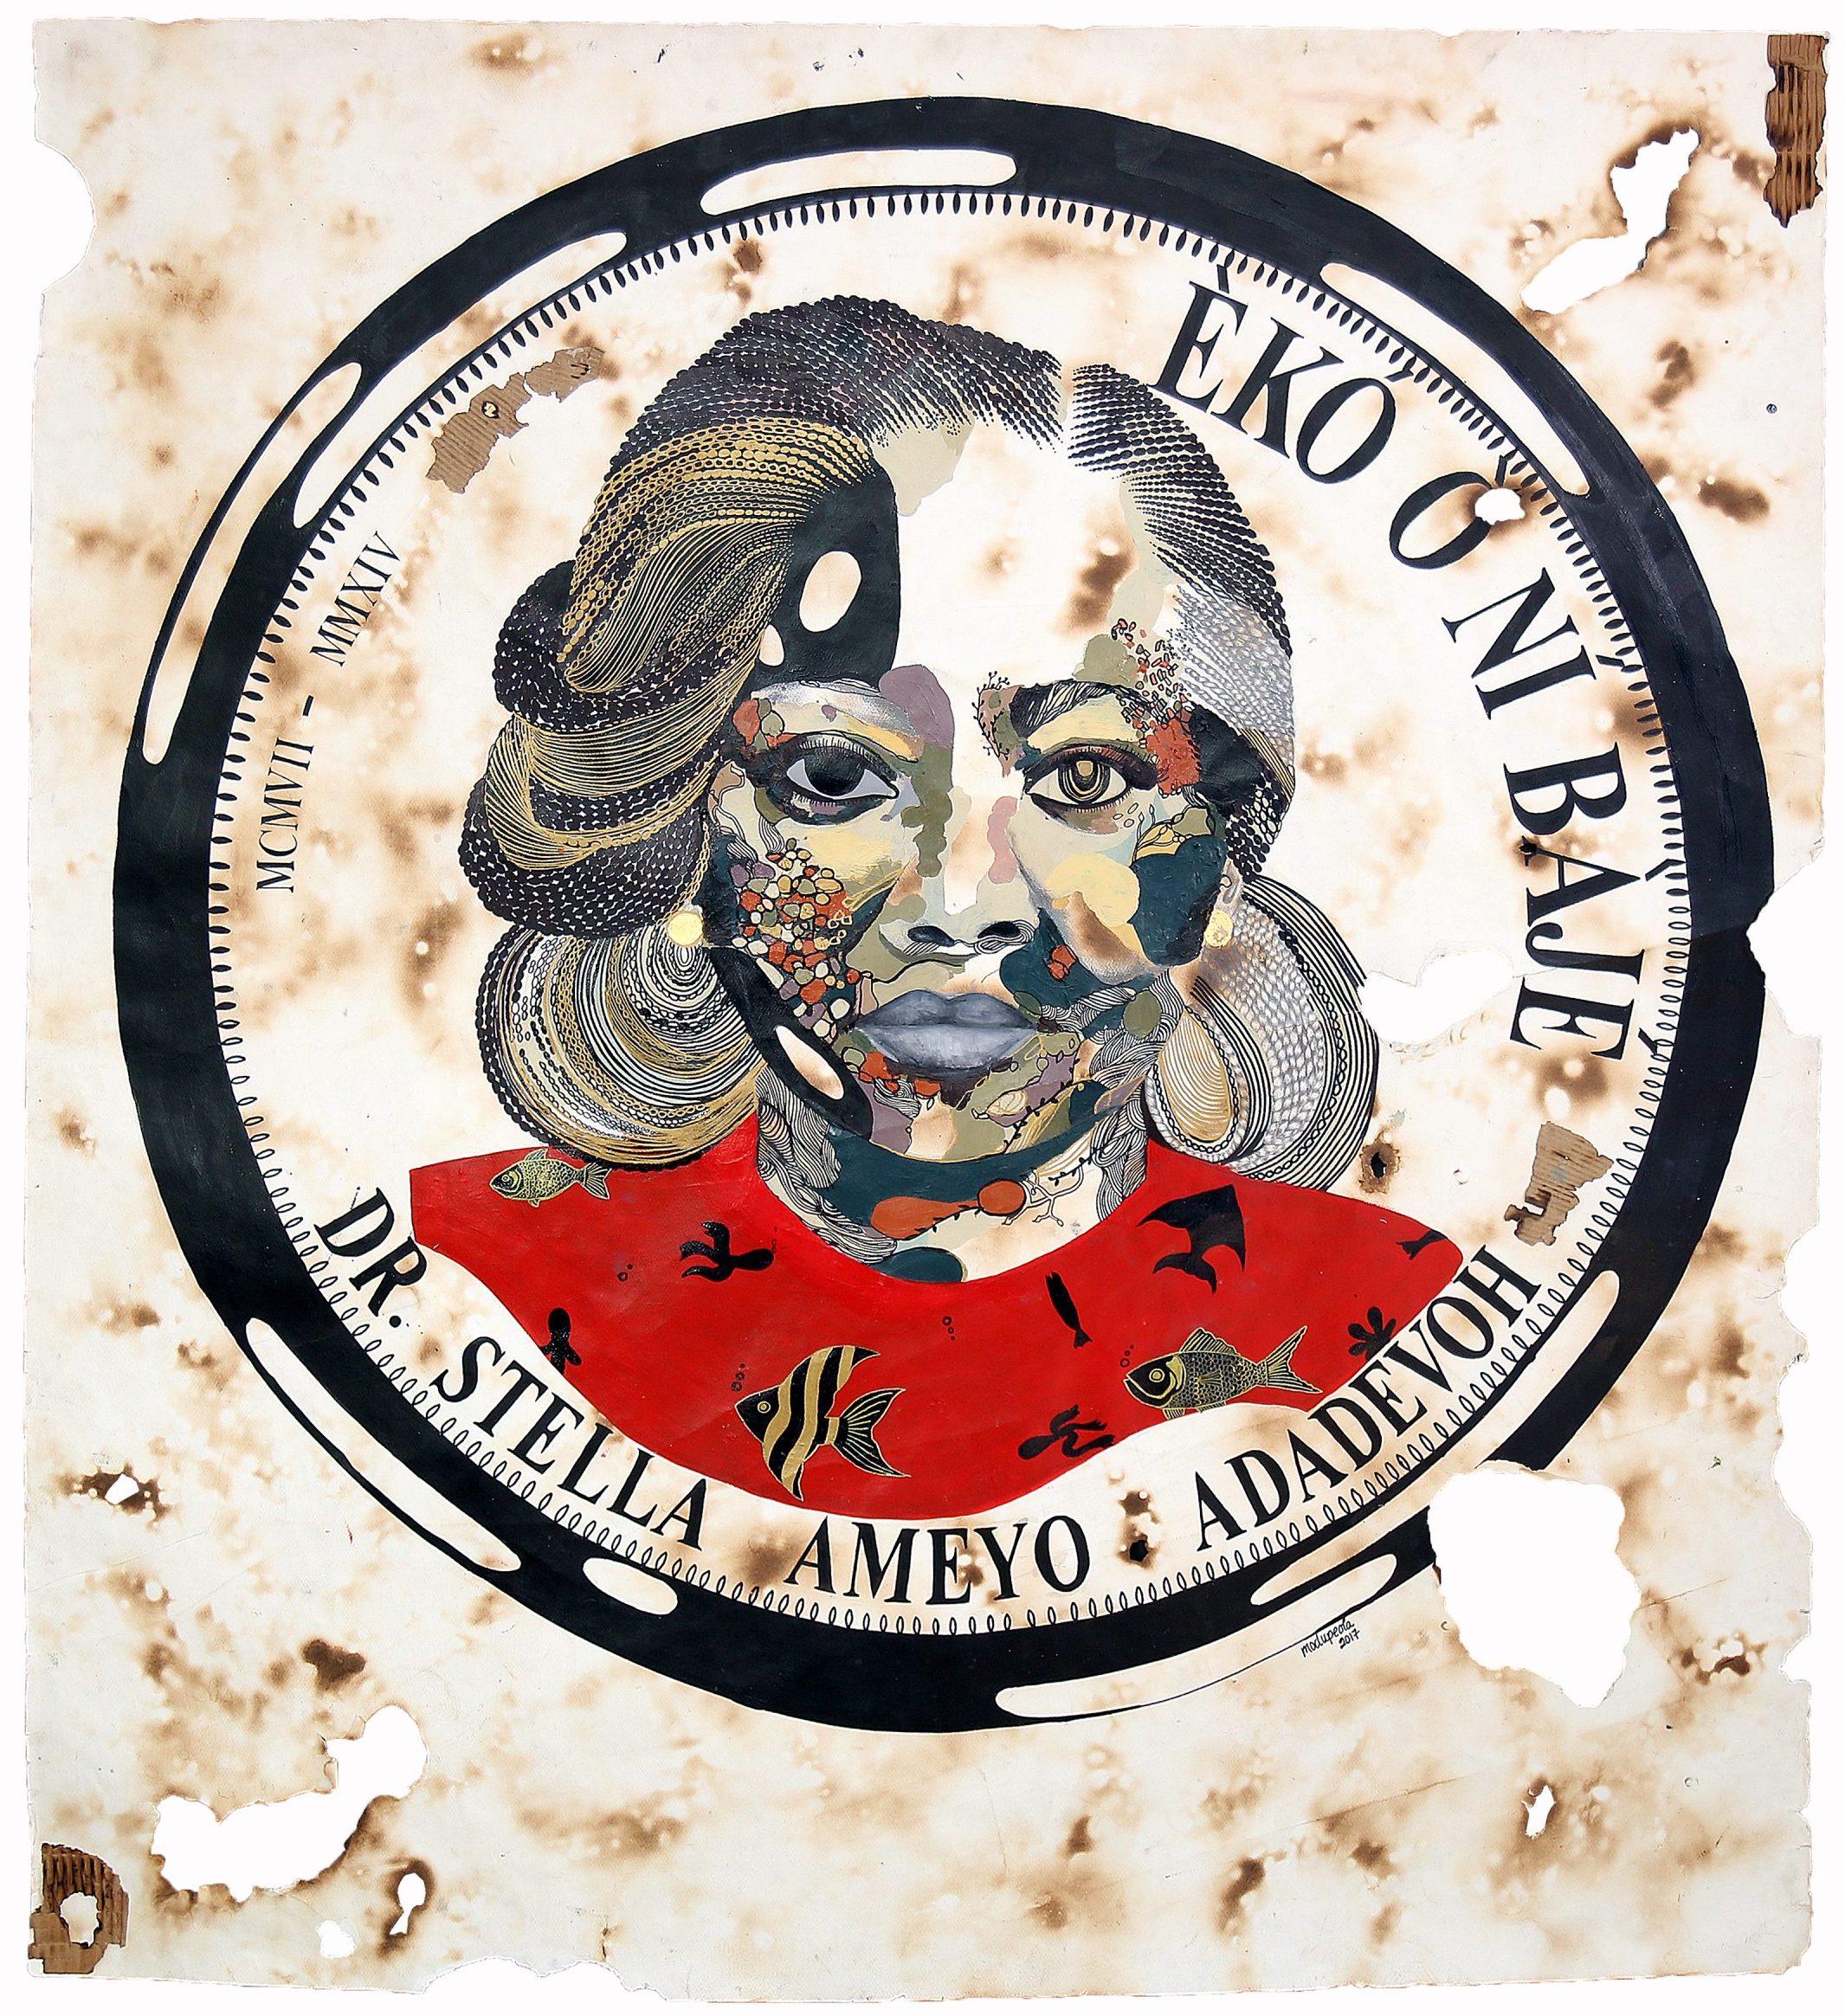 Modupeola Fadugba, ‘Medallion Woman’, 2020, Acrylic, graphite and metal leaf on burned paper. Courtesy of Modupeola Fadugba